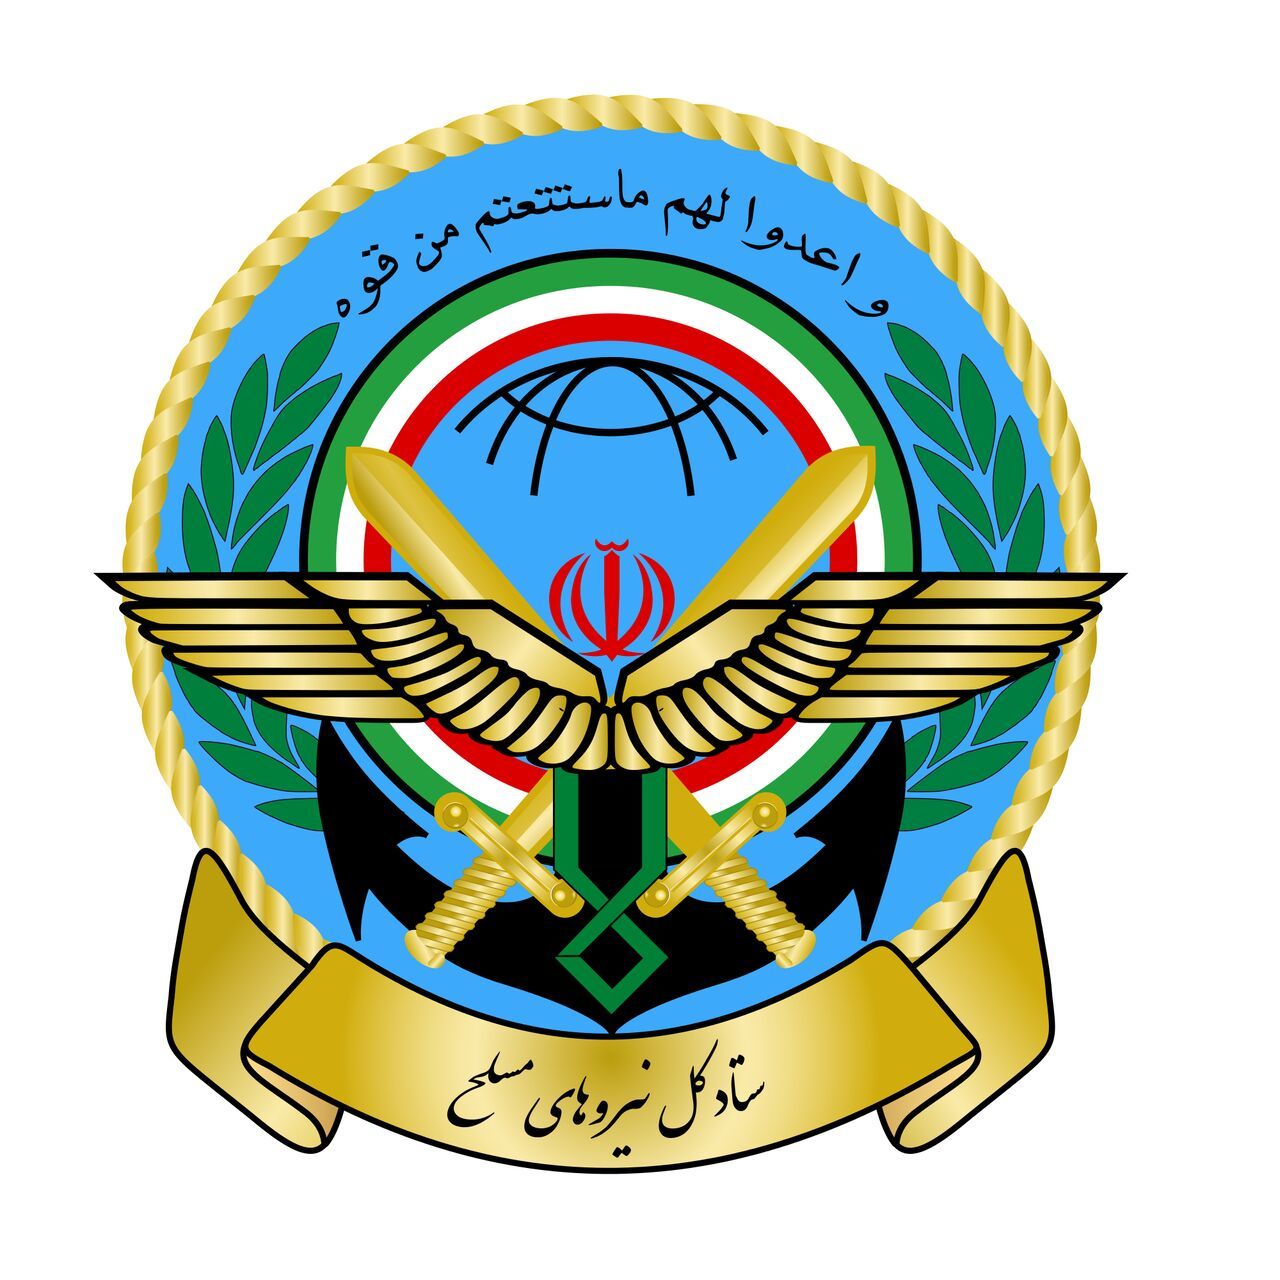 بیانیه ستادکل نیروهای مسلح: اجازه نخواهیم داد آسیبی به امنیت مردم و انقلاب وارد شود